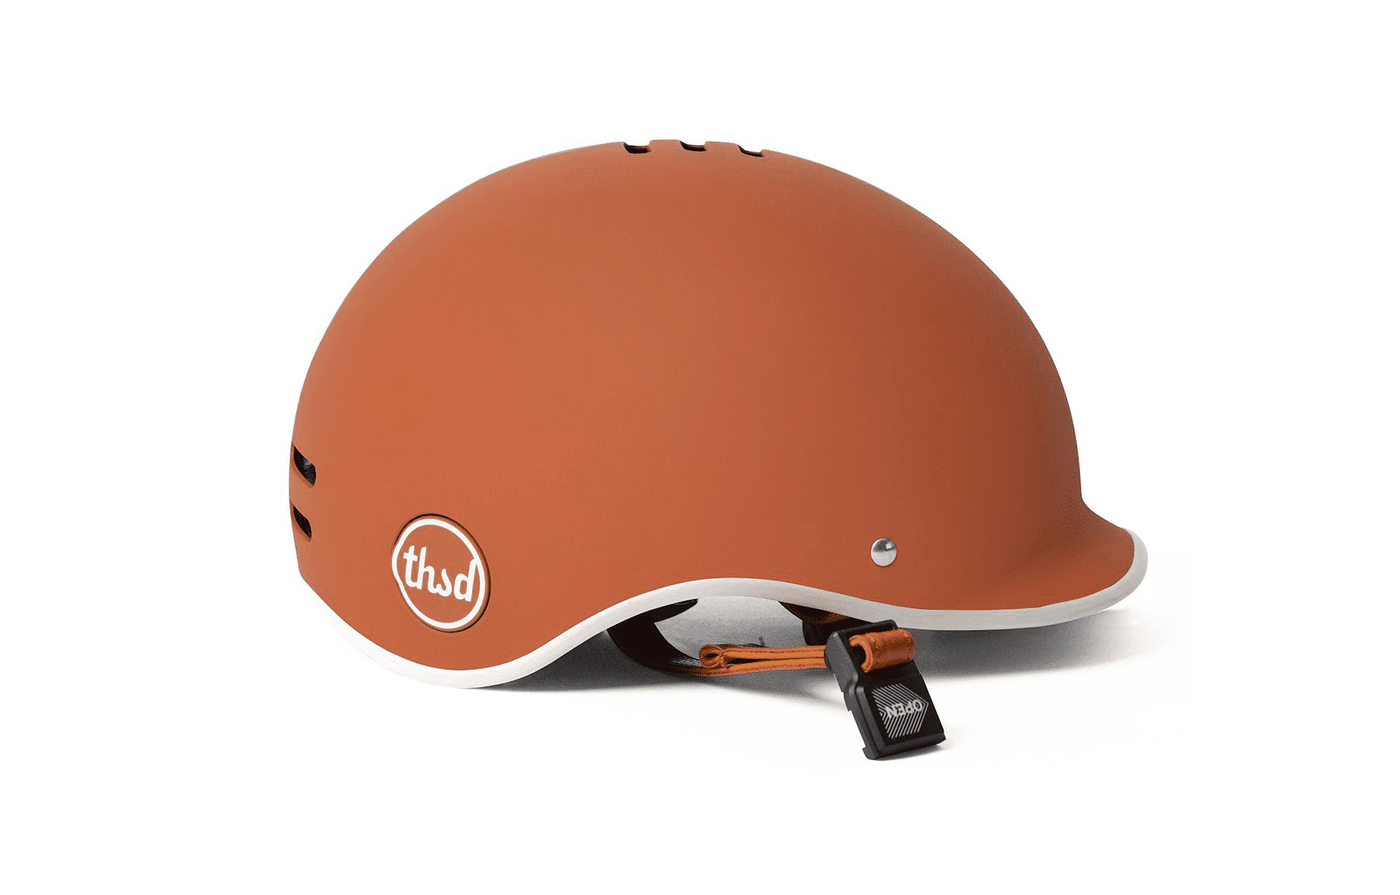 Heritage Collection Helmet